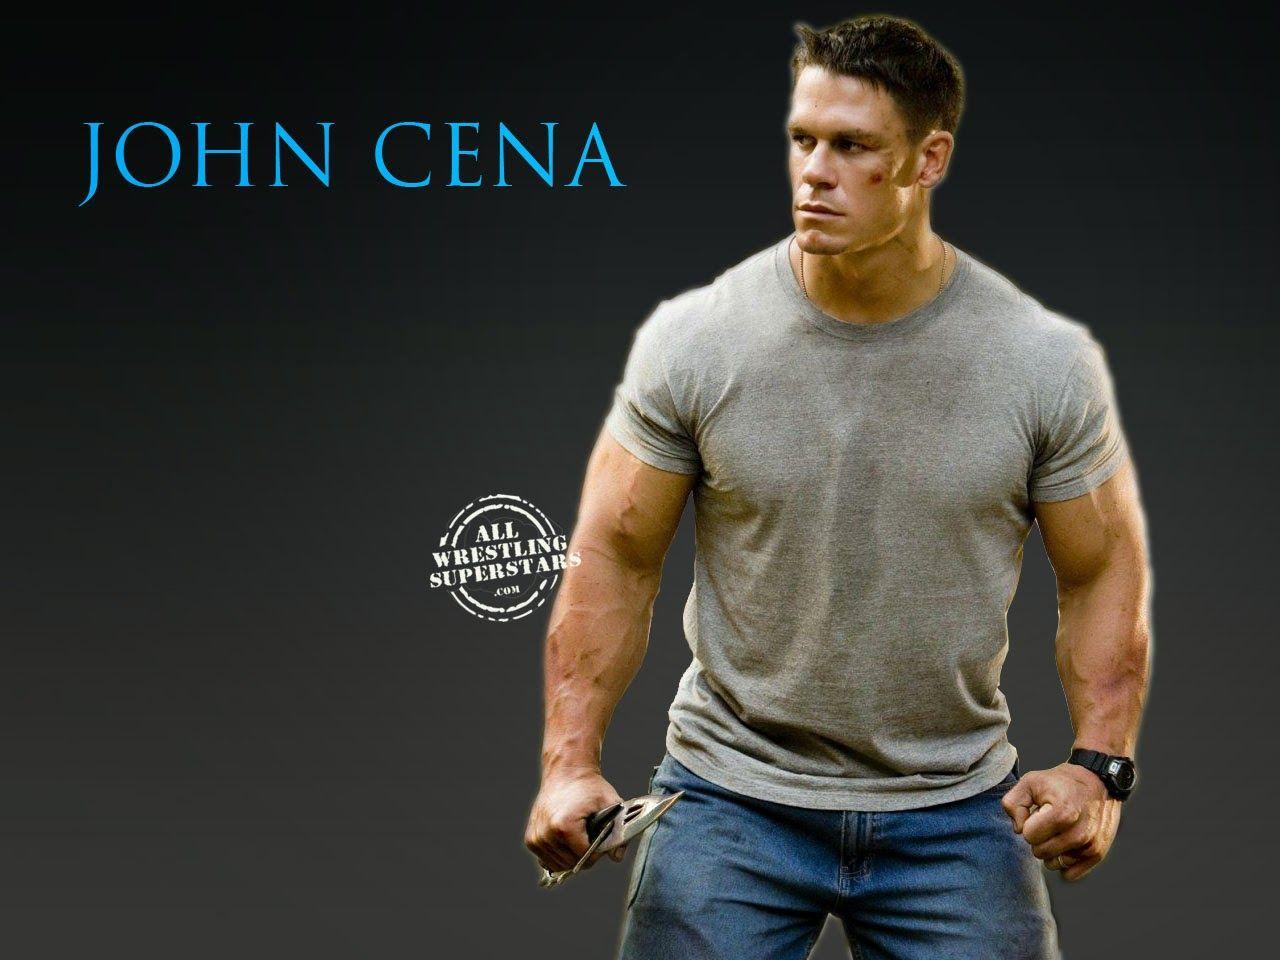 Wwe John Cena Superstar Wallpaper. High Definitions Wallpaper